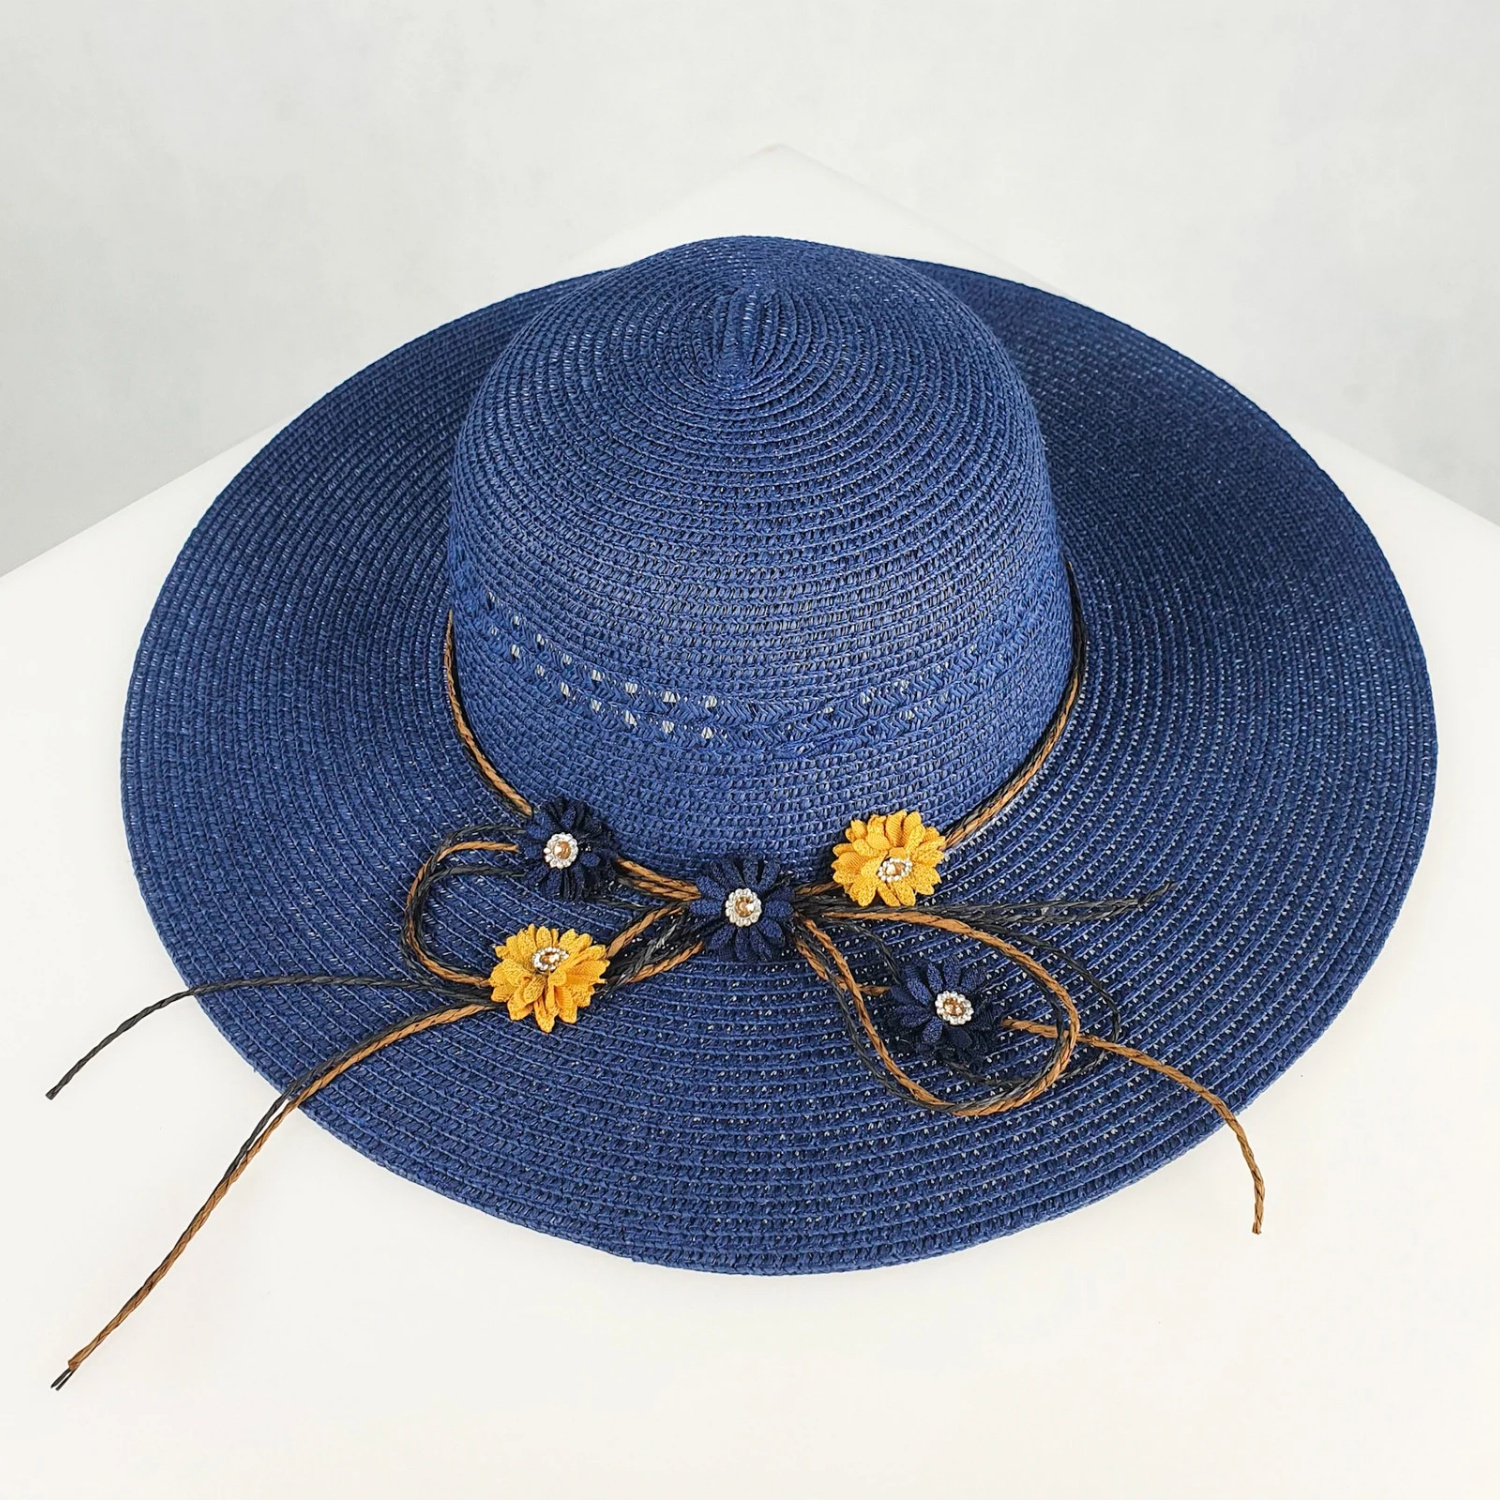 lily kapelusz damski slomkowy niebieski dodatki plazowe okrycie glowy polski producent lavel 2023 przod.jpg